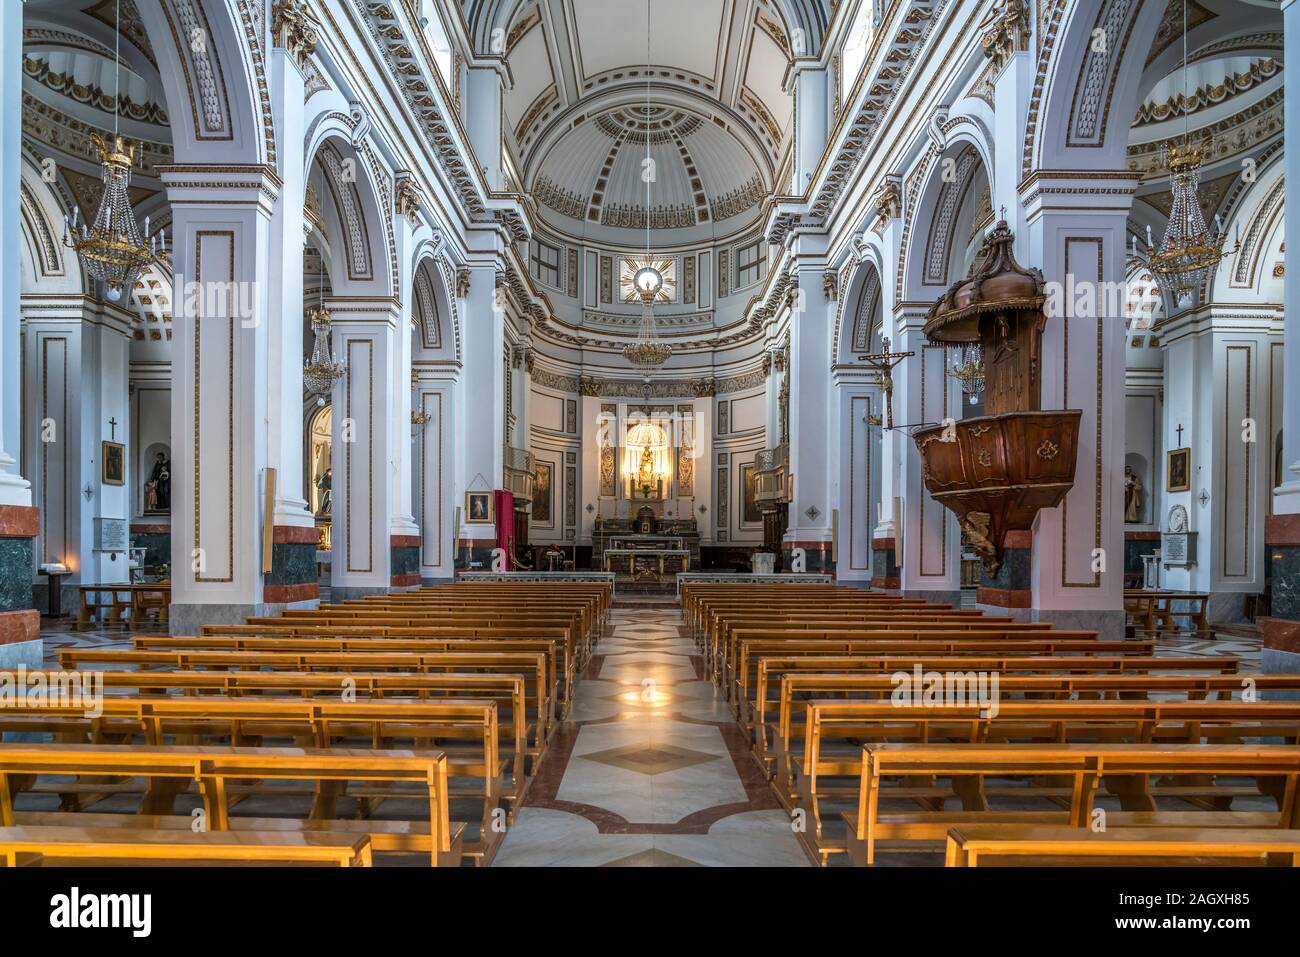 Innenraum der Basilica di Maria Santissima del Soccorso, Sciacca, Agrigent, Sizilien, Italien, Europa  |  Cathedral of Maria SS. del Soccorso  interio Stock Photo